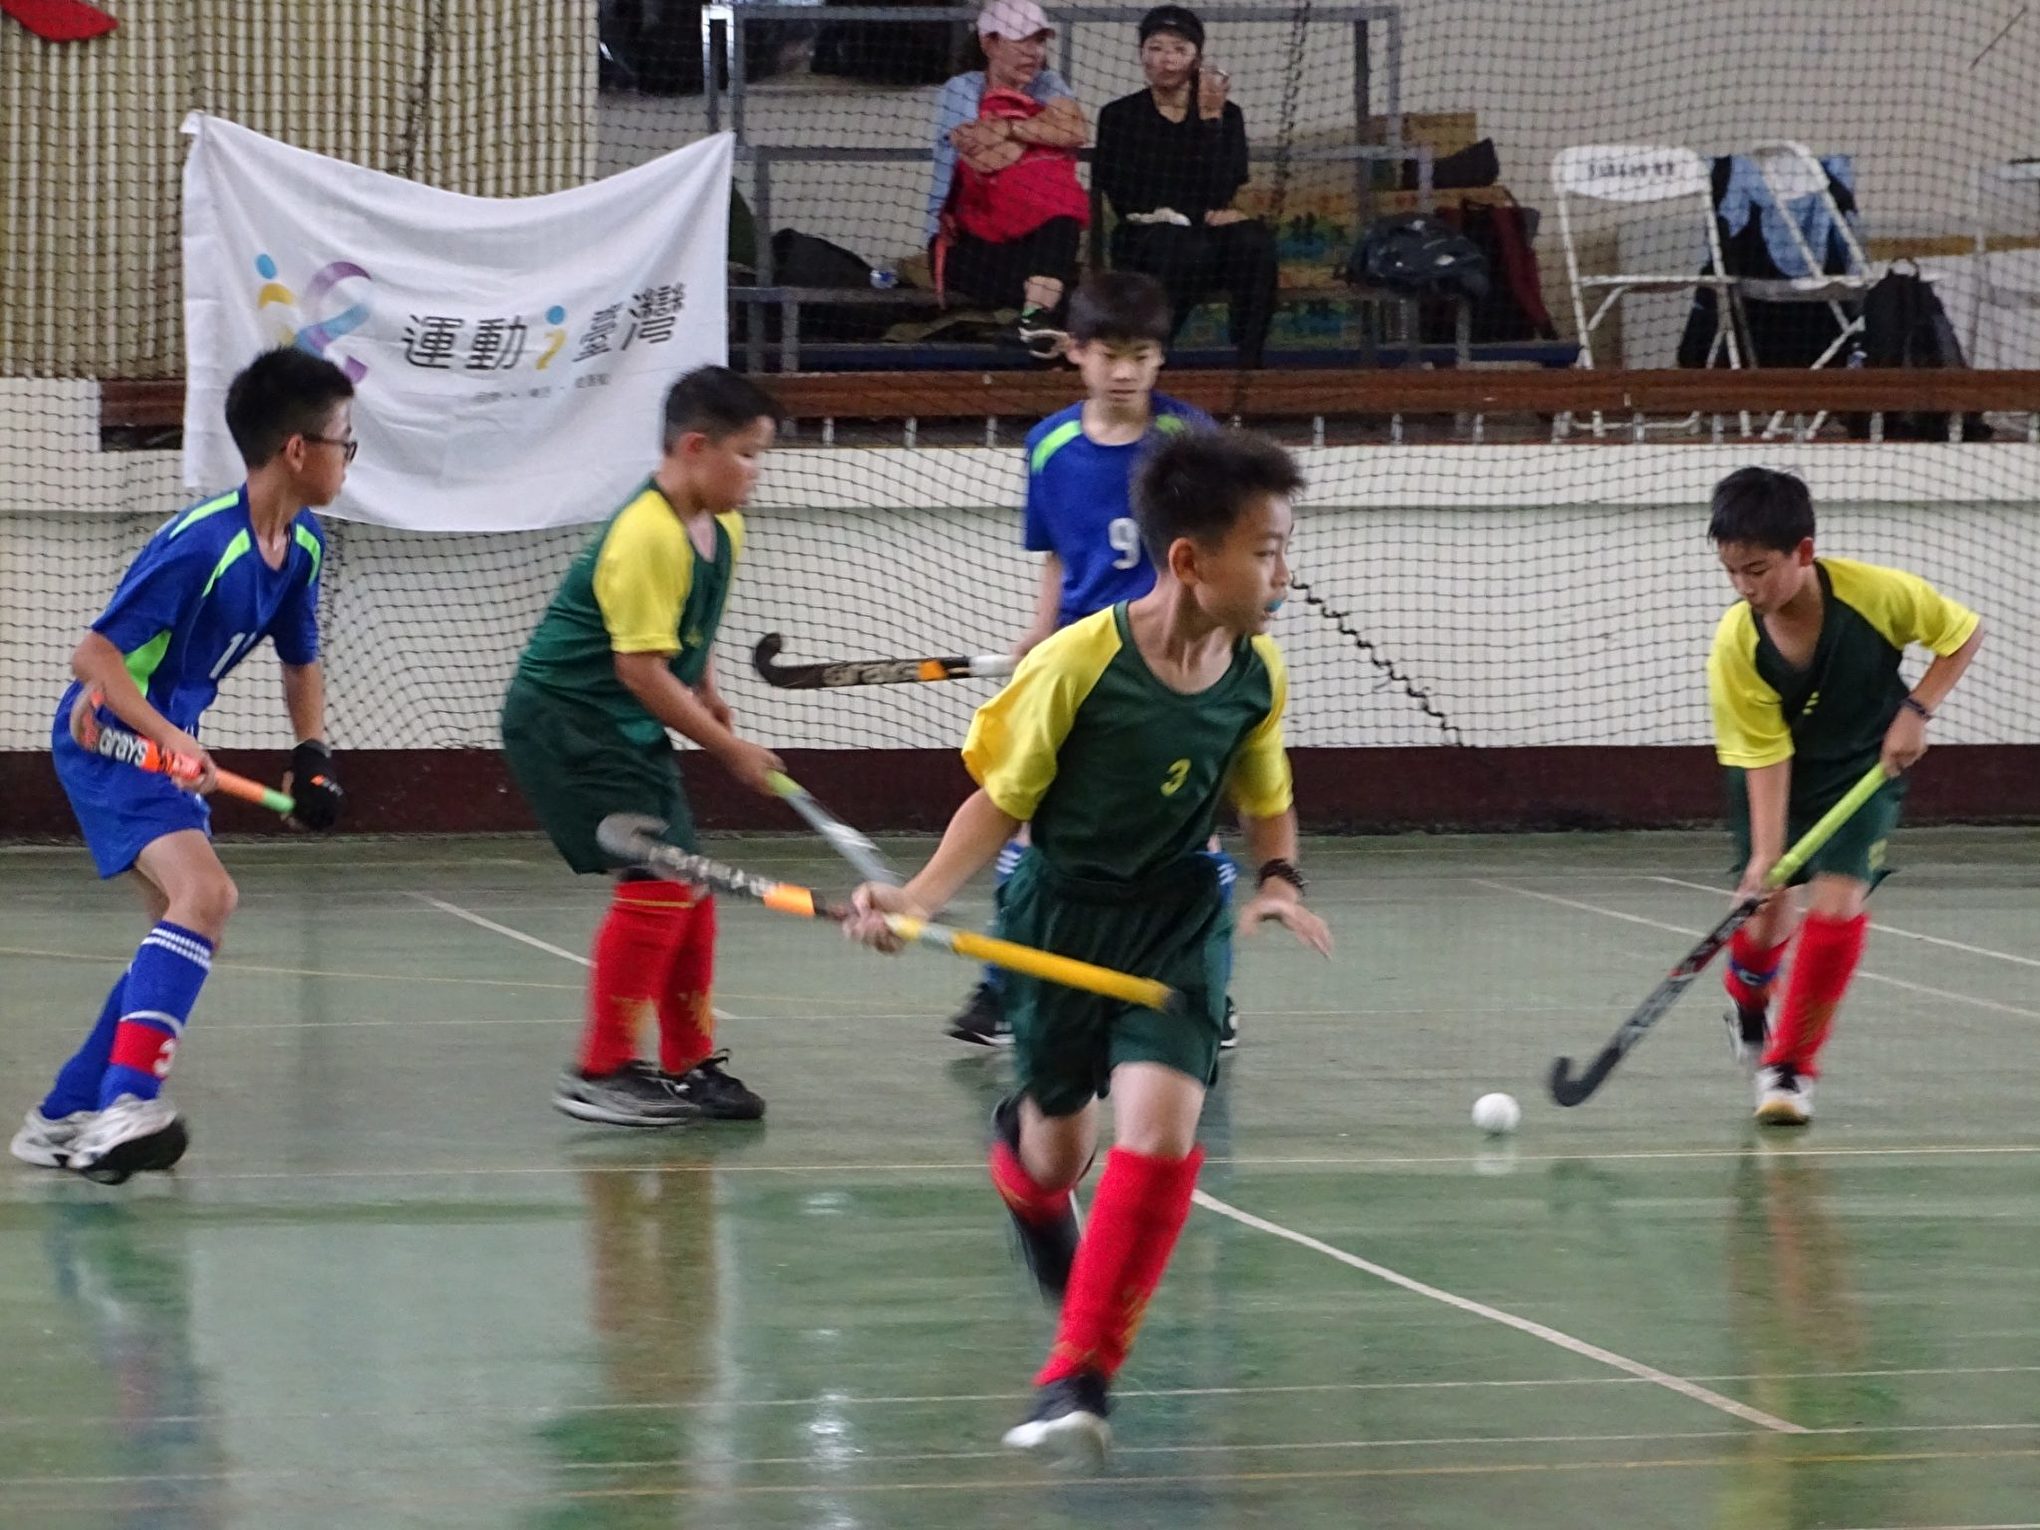 衛冕「加州盃」 台灣曲棍球小將週末出賽